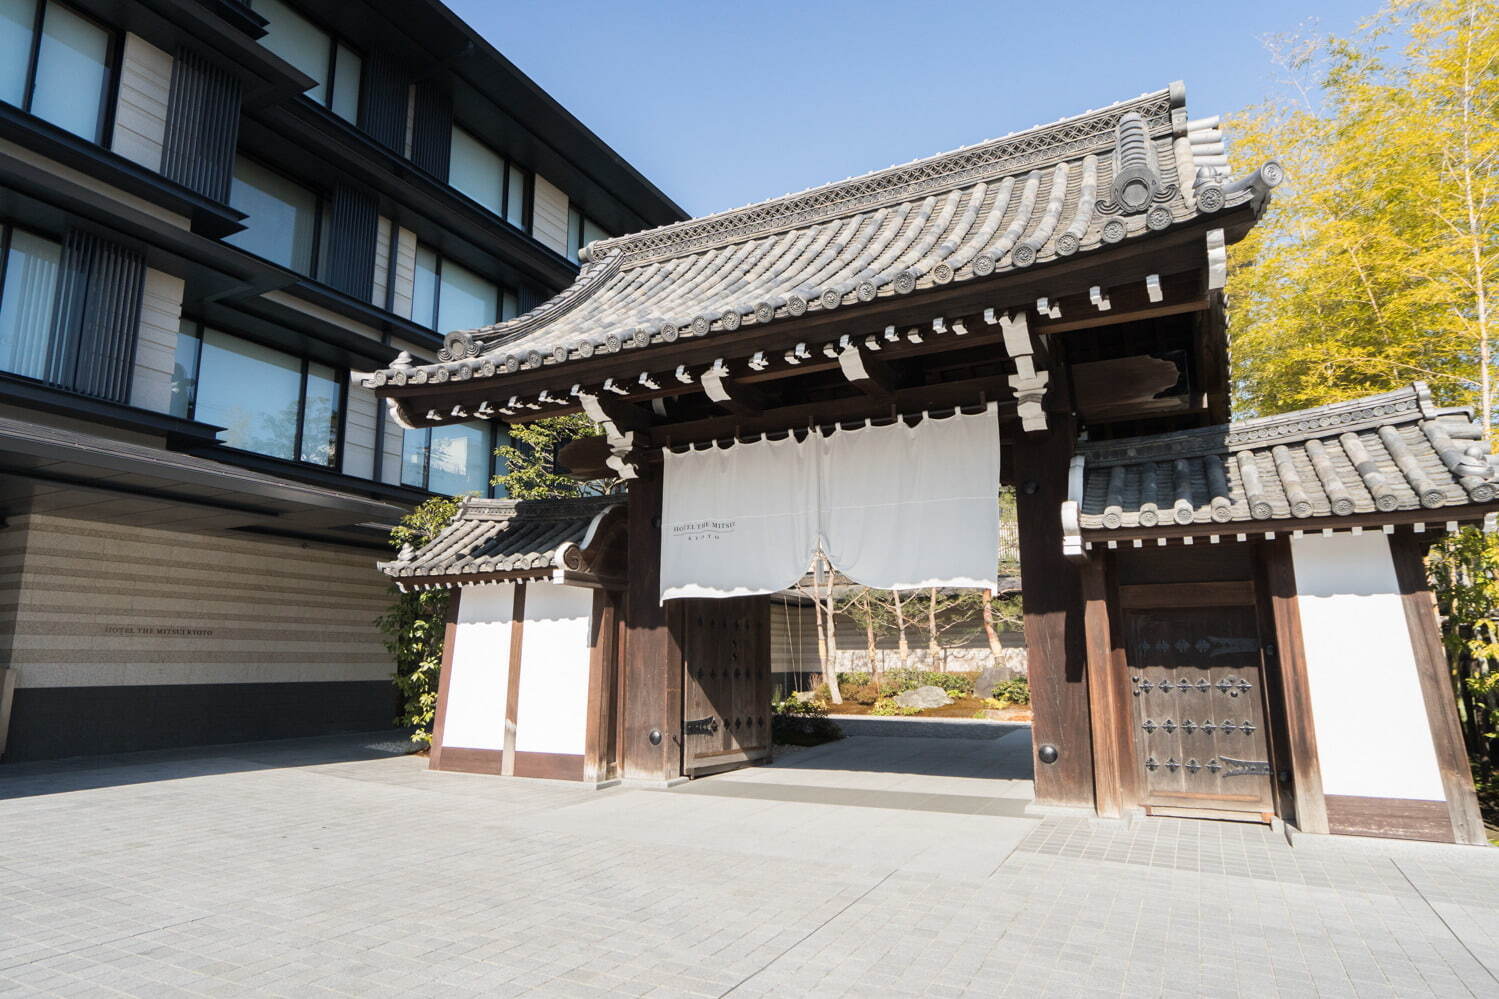 〈梶井宮門〉1703年に梶井宮御殿の門として創建された。